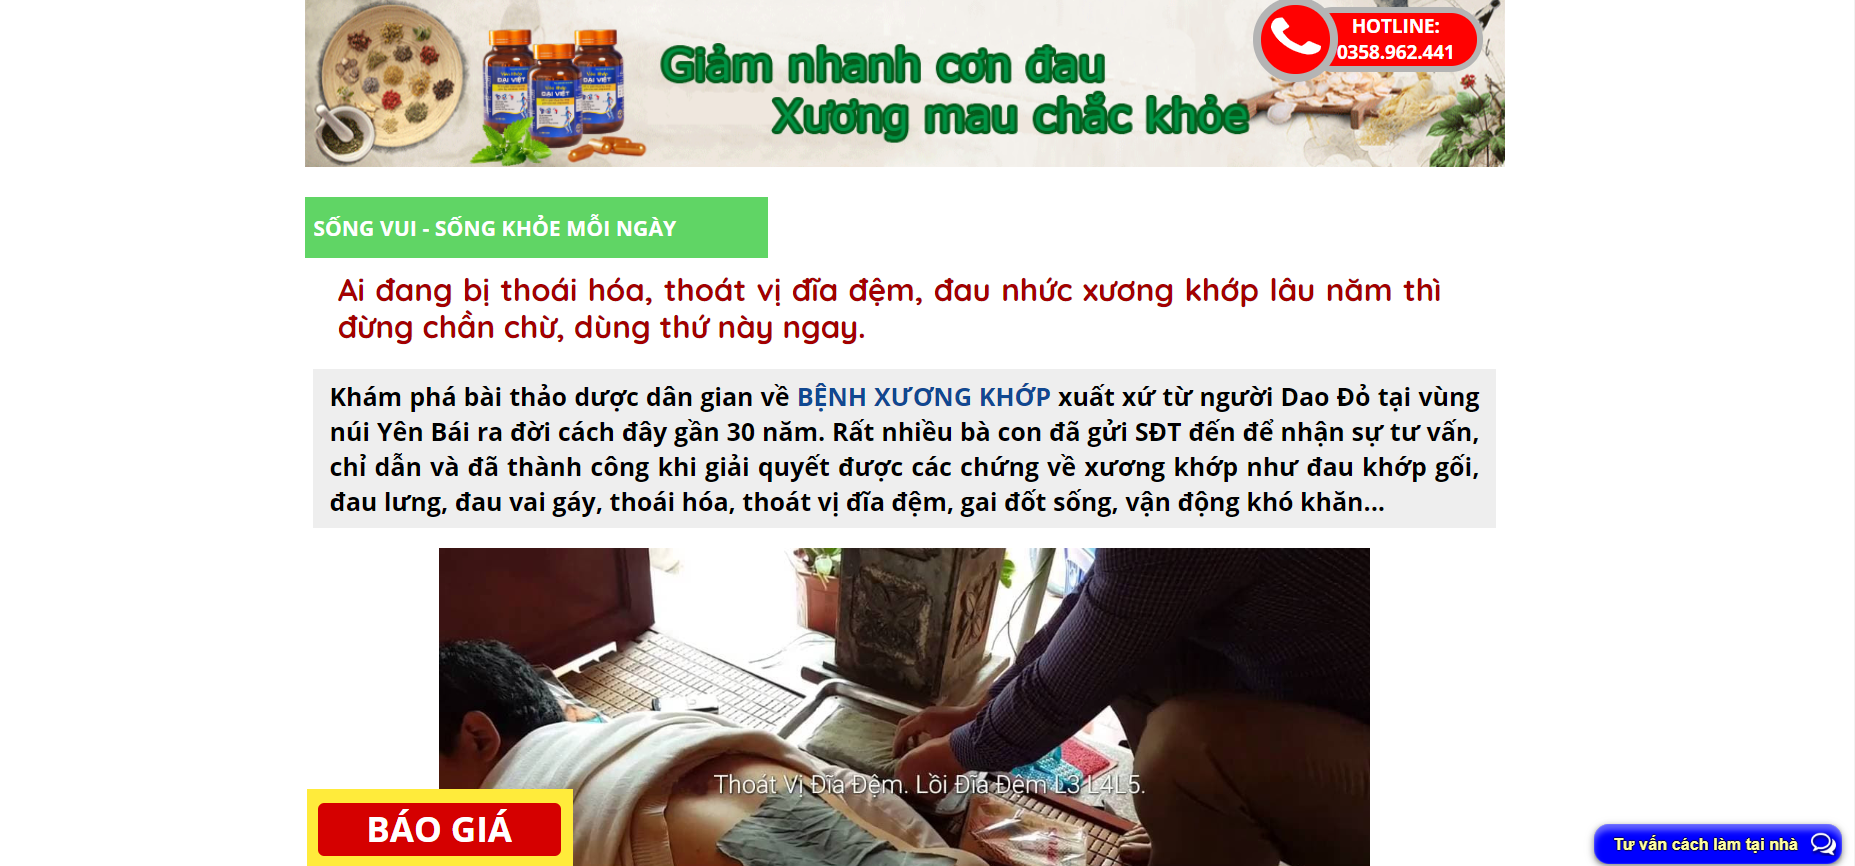 Website quảng cáo Viêm khớp Đại Việt đang lừa dối người tiêu dùng